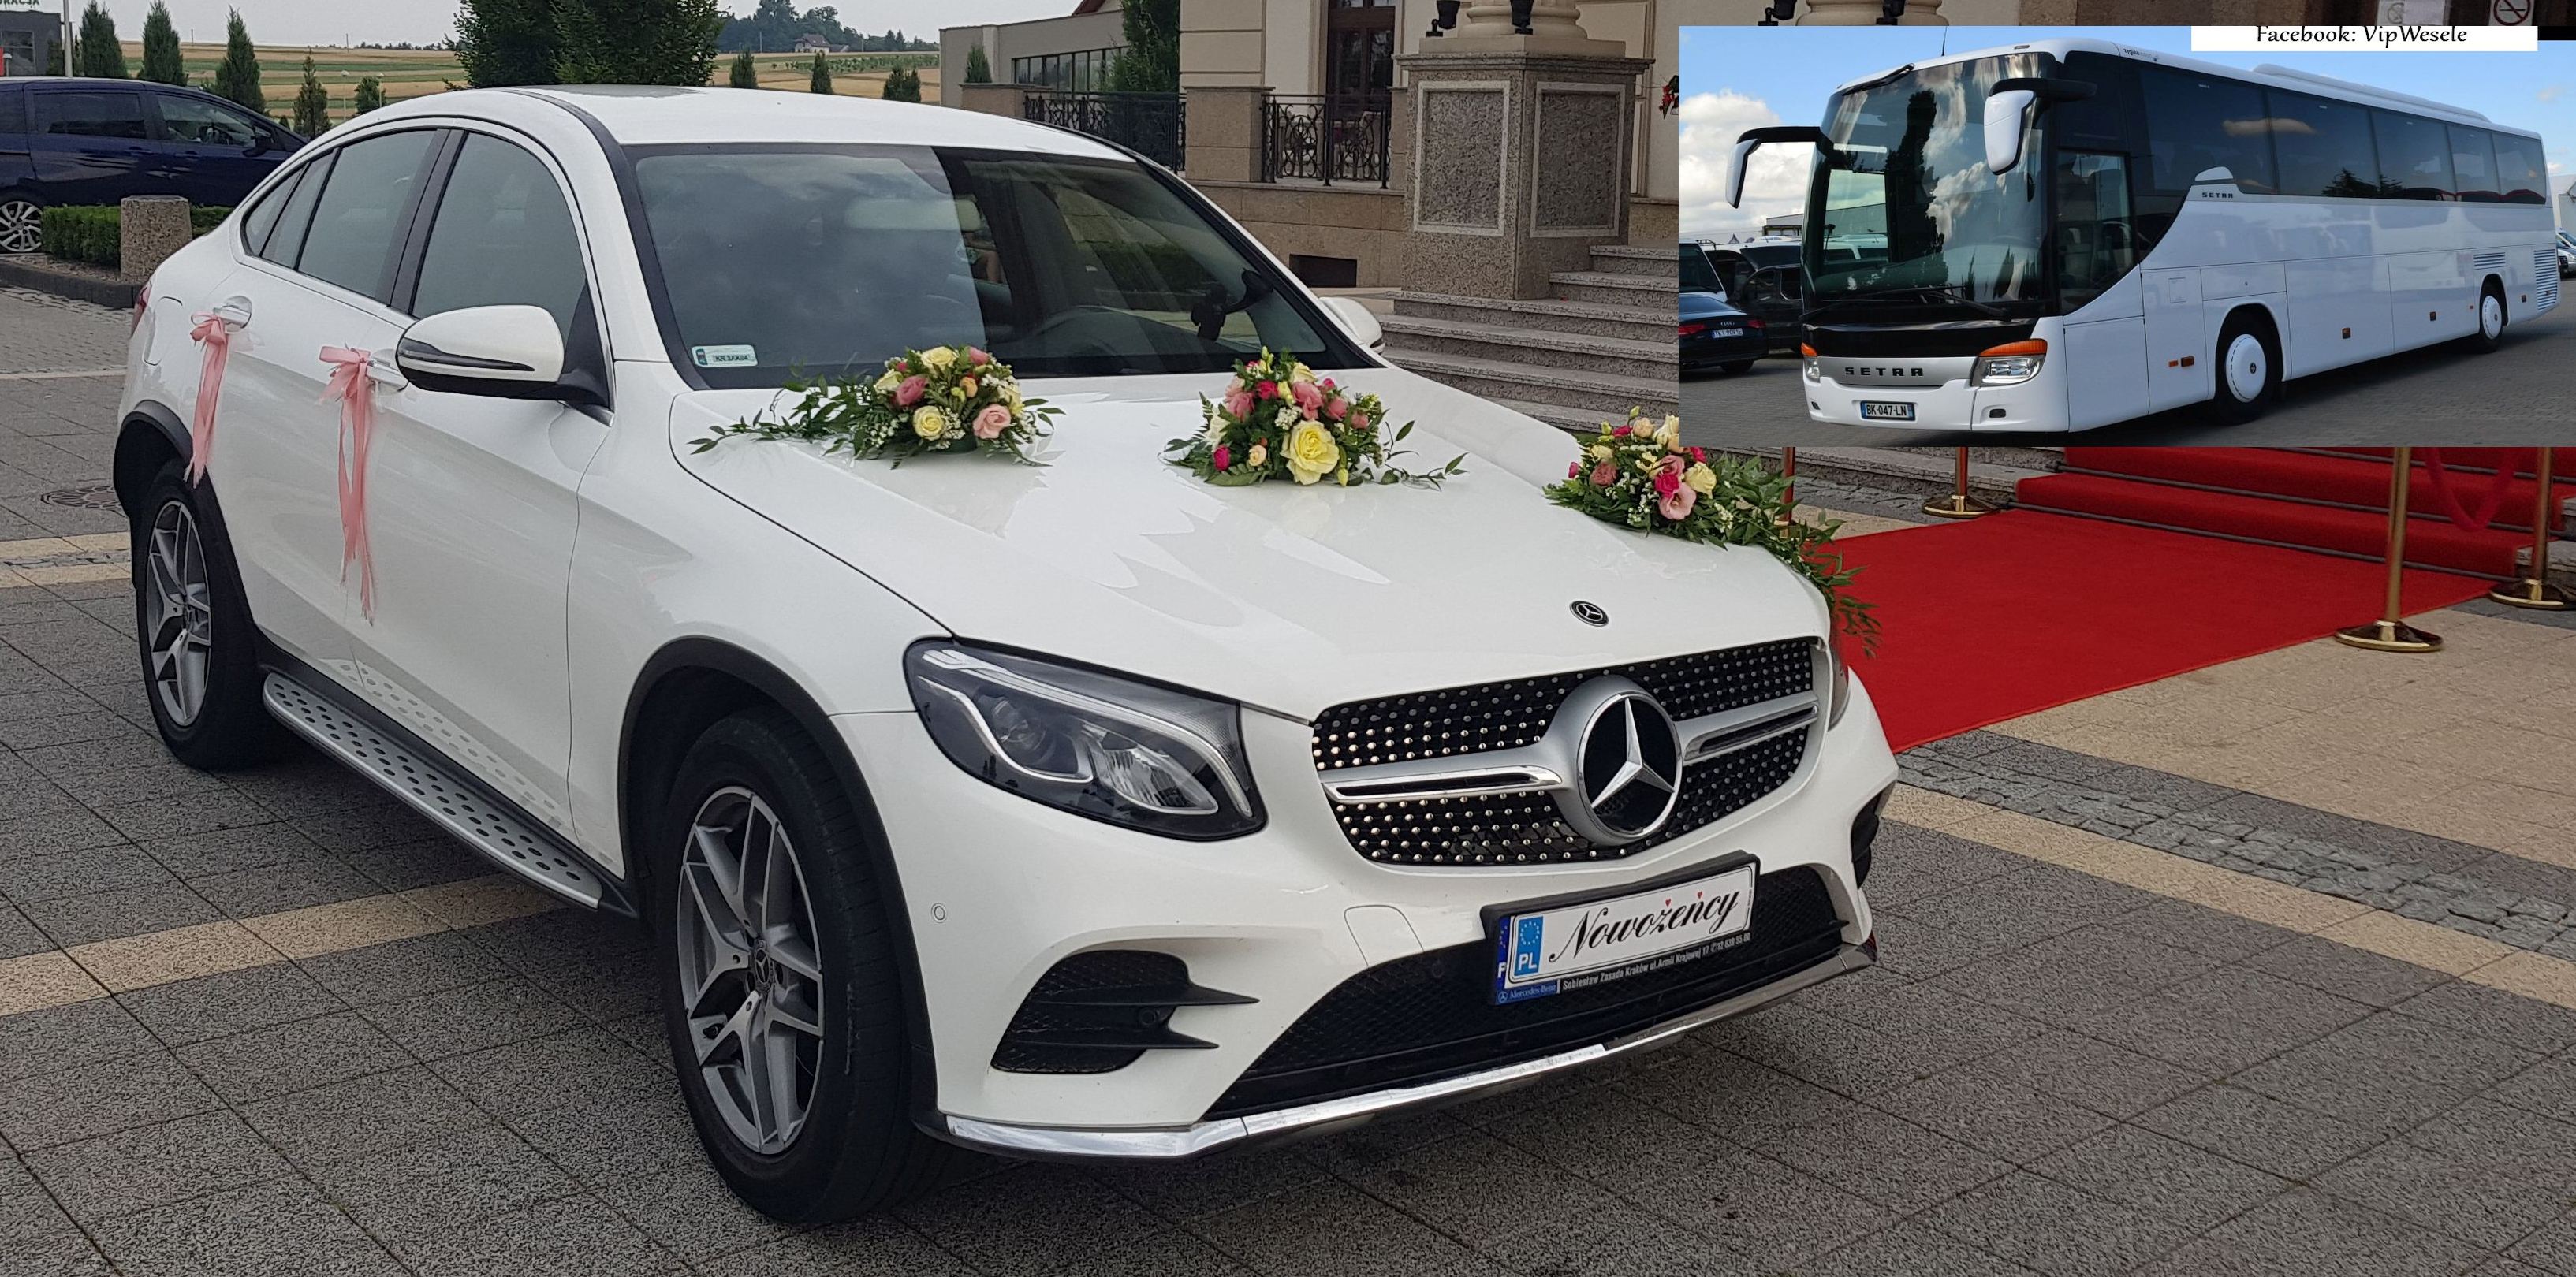 Auto do ślubu MERCEDES Biały GLC Coupe,a także BUS Kraków